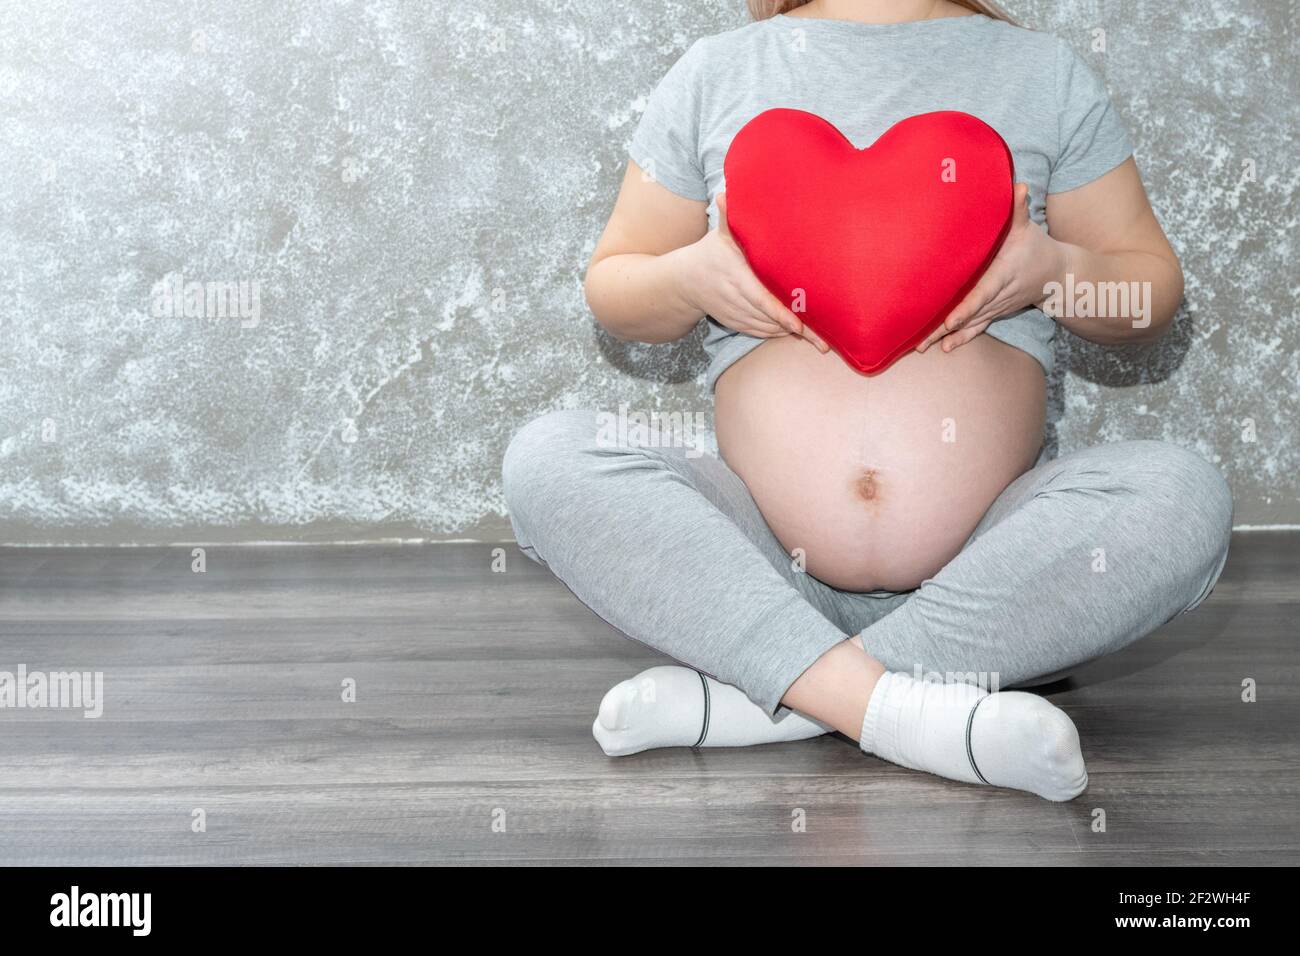 Grossesse, maternité, personnes, amour et attente concept - gros plan d'une femme enceinte tenant un coussin en forme de cœur rouge à la maison. Une femme enceinte Banque D'Images